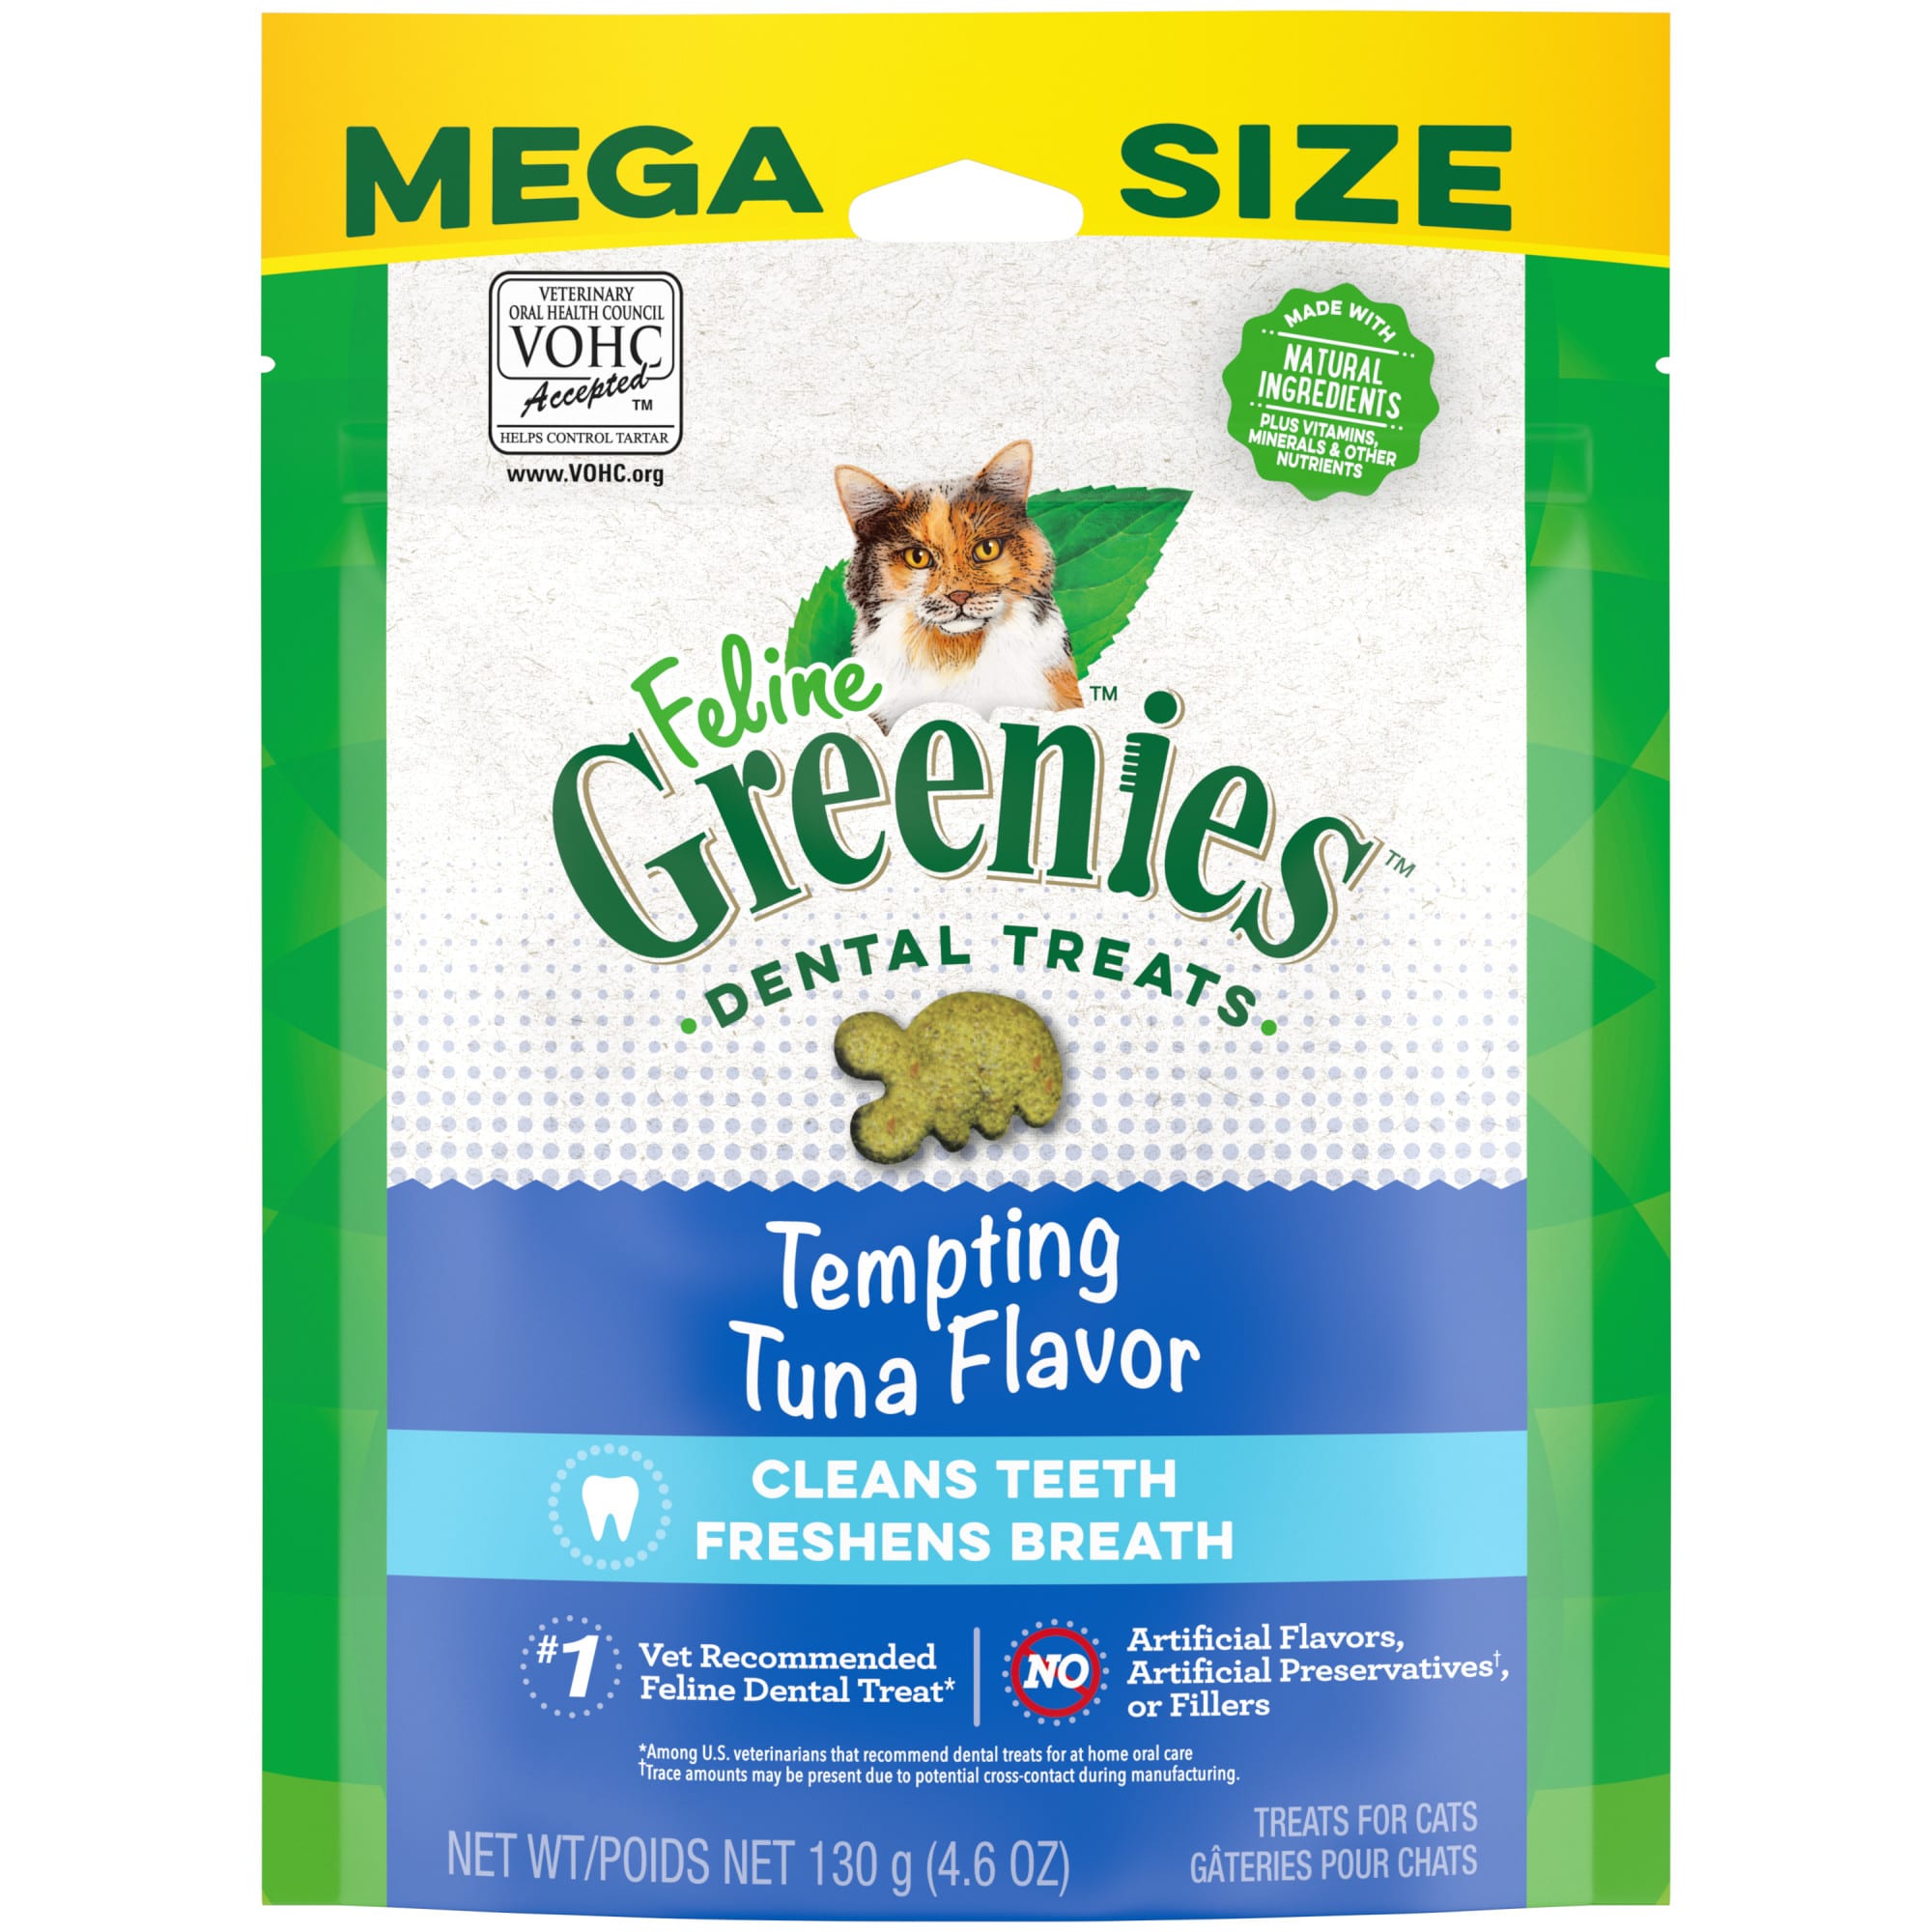 Feline Greenies Tempting Tuna Flavor Adult Dental Cat Treats, 4.6 oz